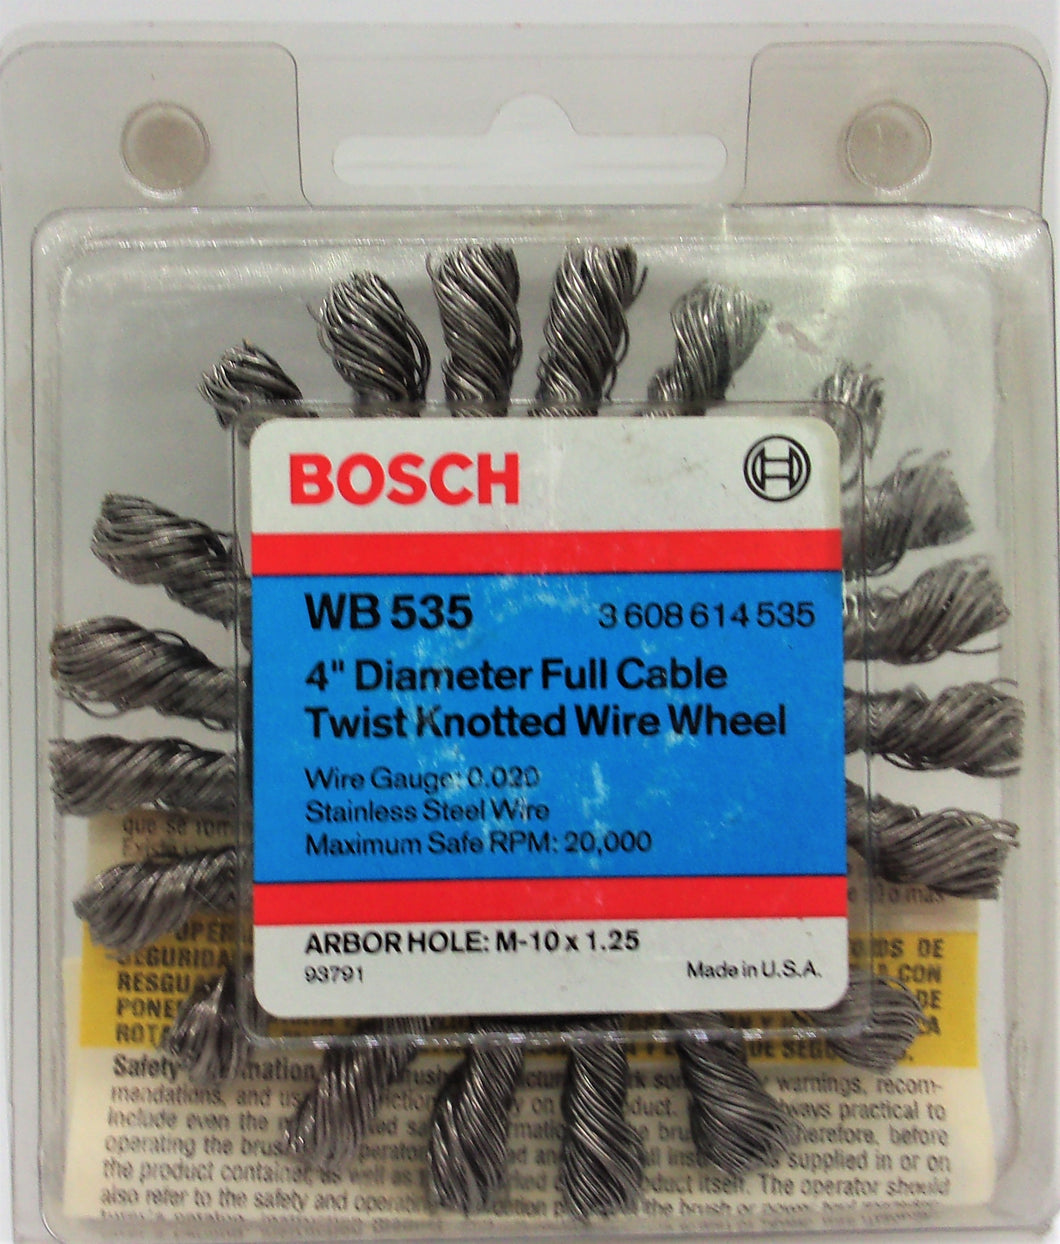 Bosch WB535 Rueda de amoladora de alambre anudado torcido de cable completo de 4